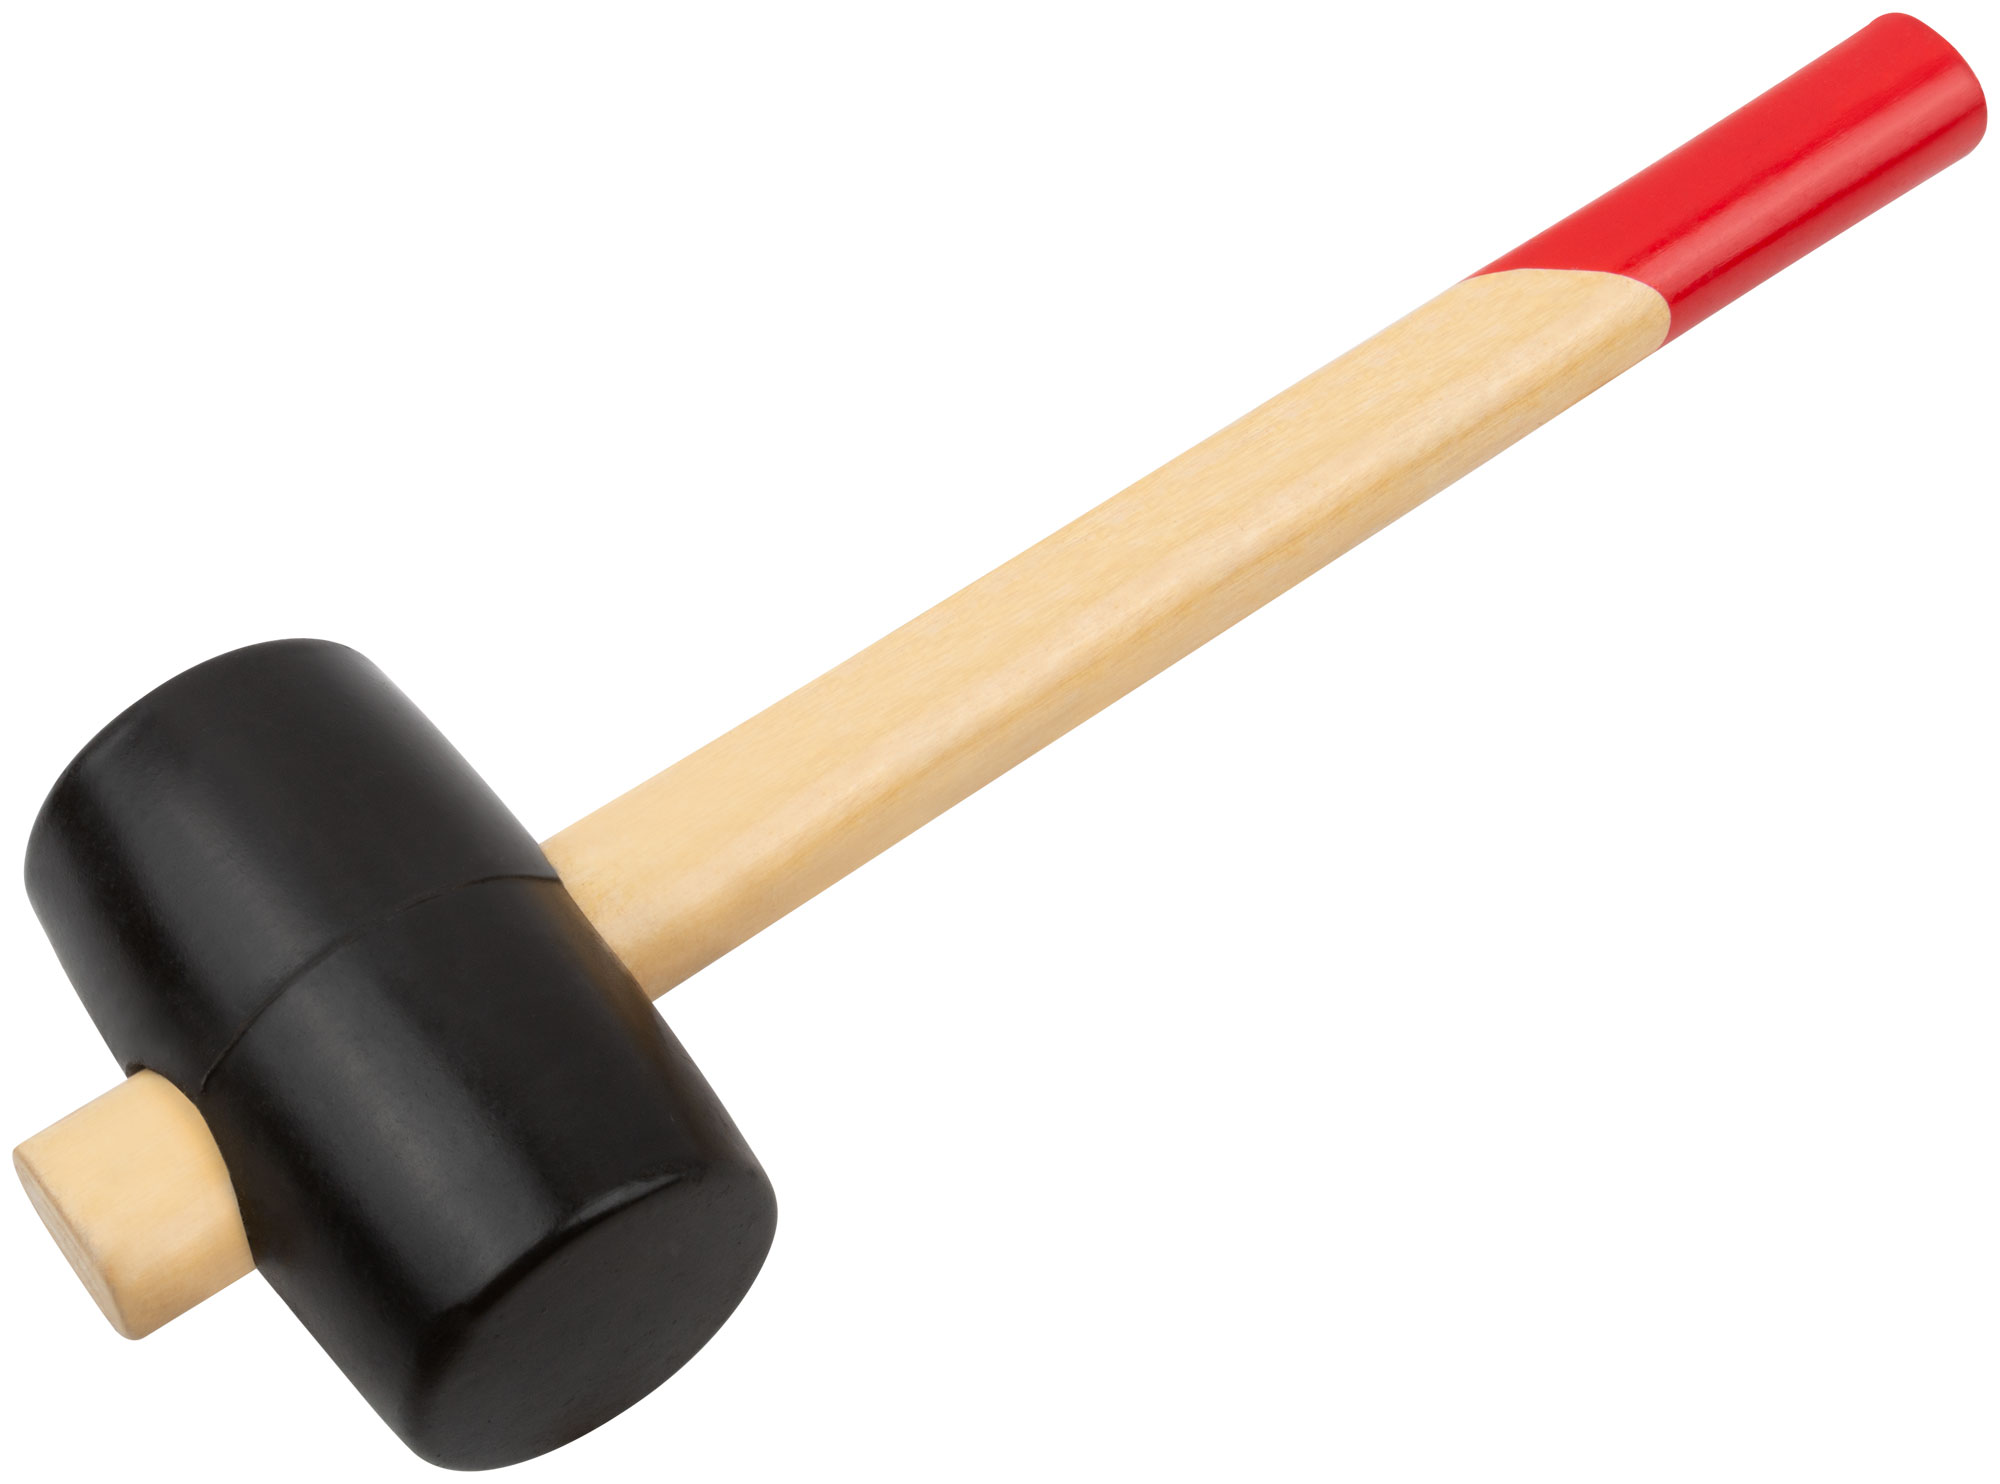 Киянка резиновая, 50 мм ( 300 гр ) КУРС 45350 киянка курс оптима 45355 резиновая деревянная ручка 55 мм